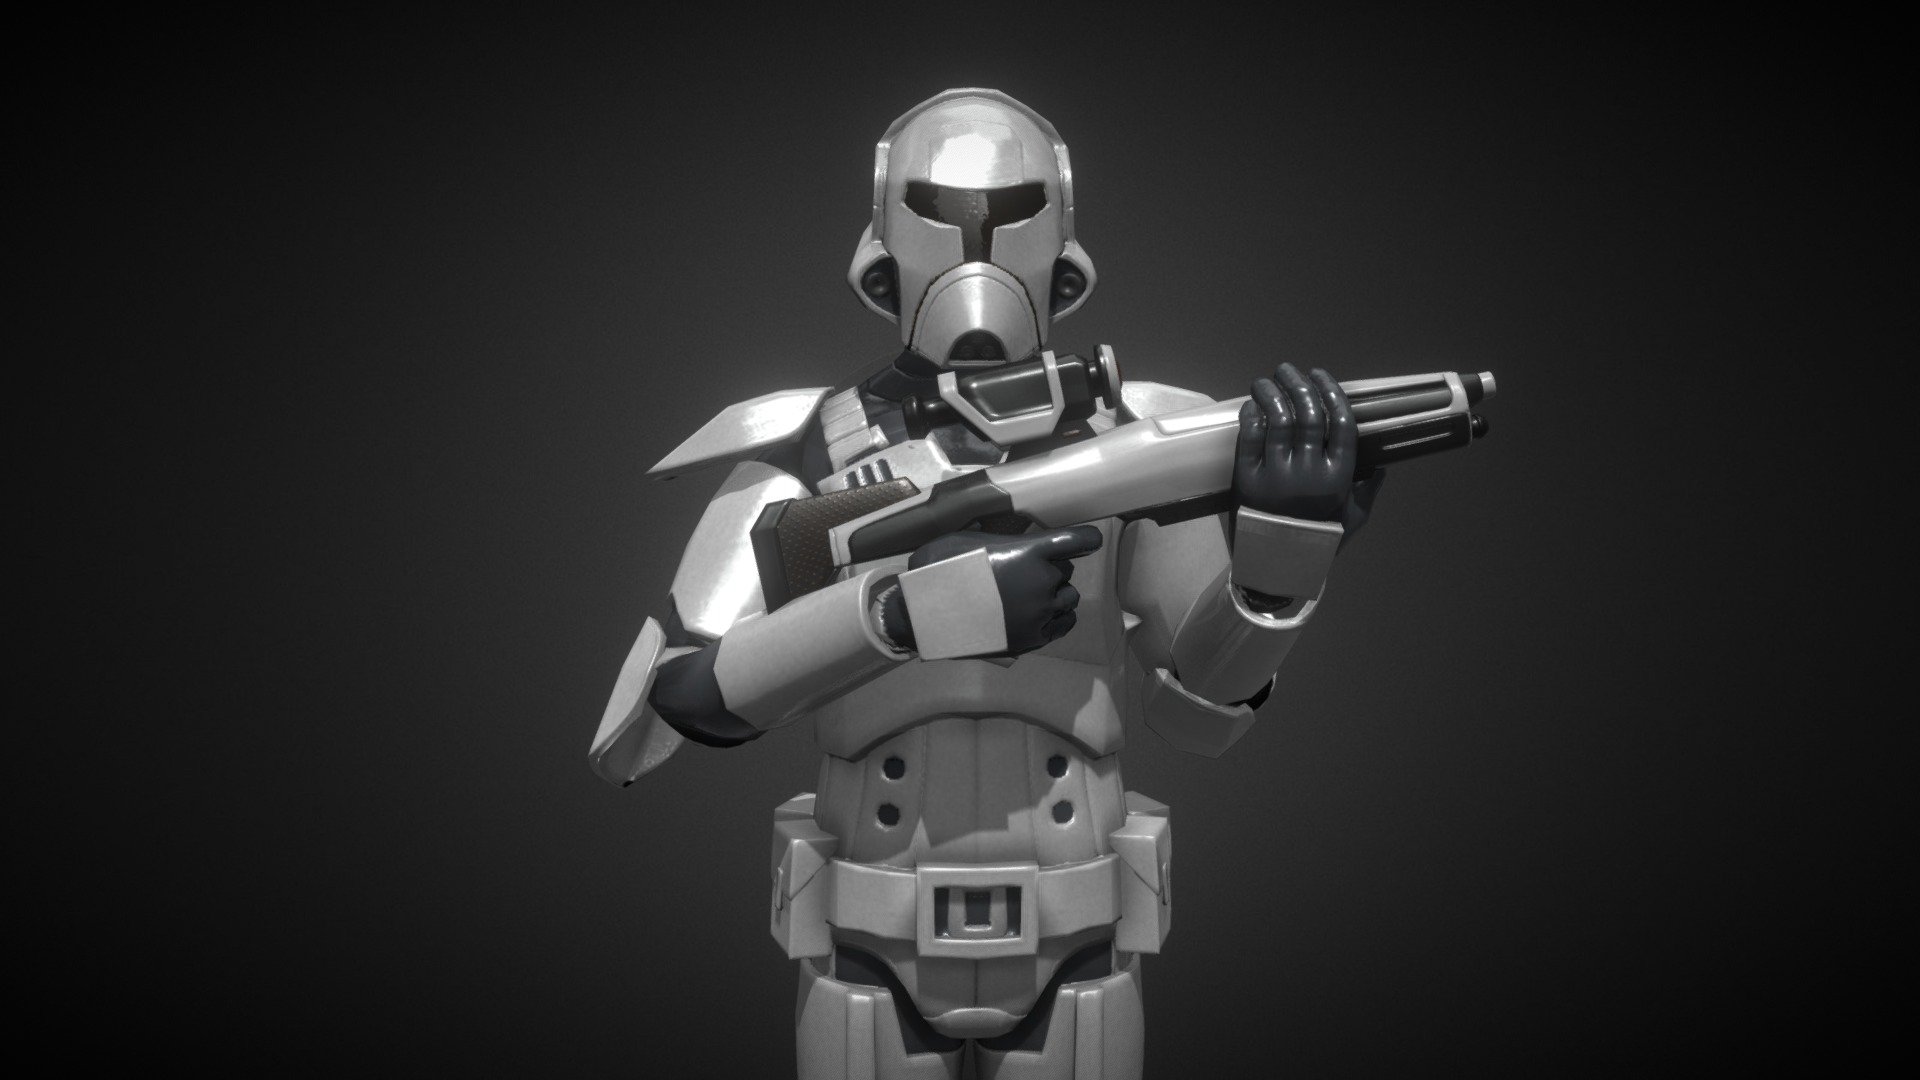 old republic trooper armor